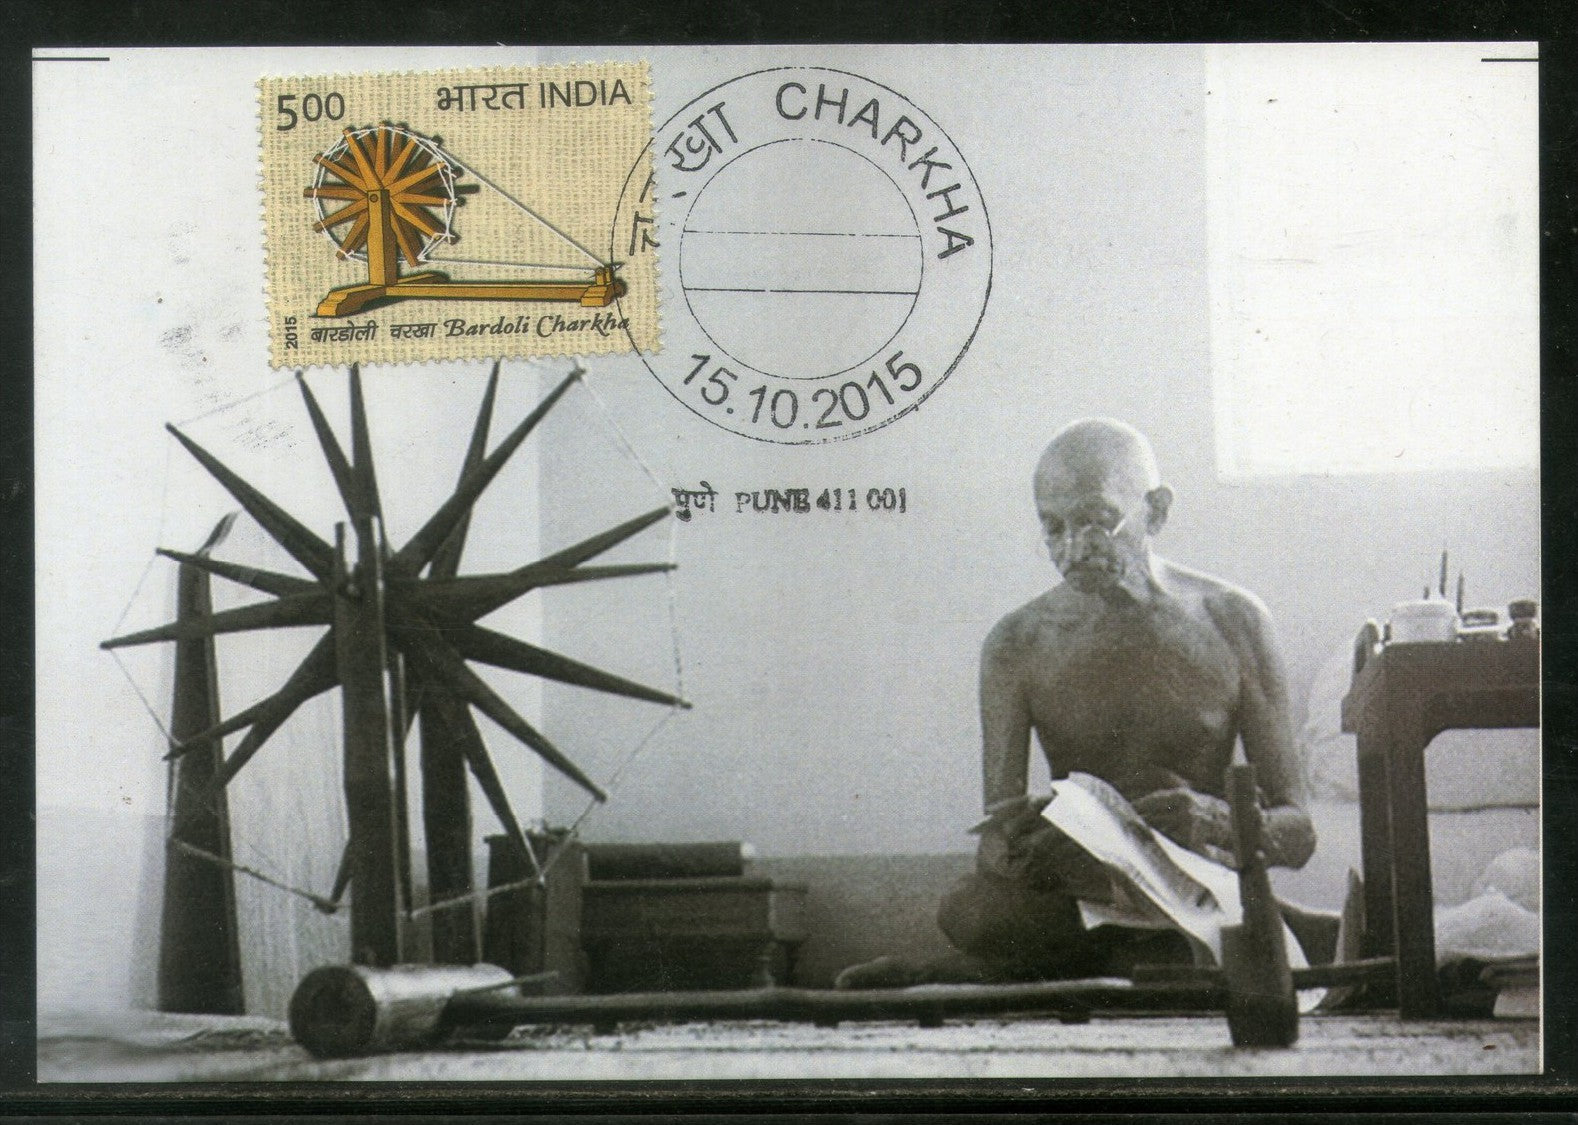 Mahatma Gandhi Bardoli Charkha Spinning Wheel